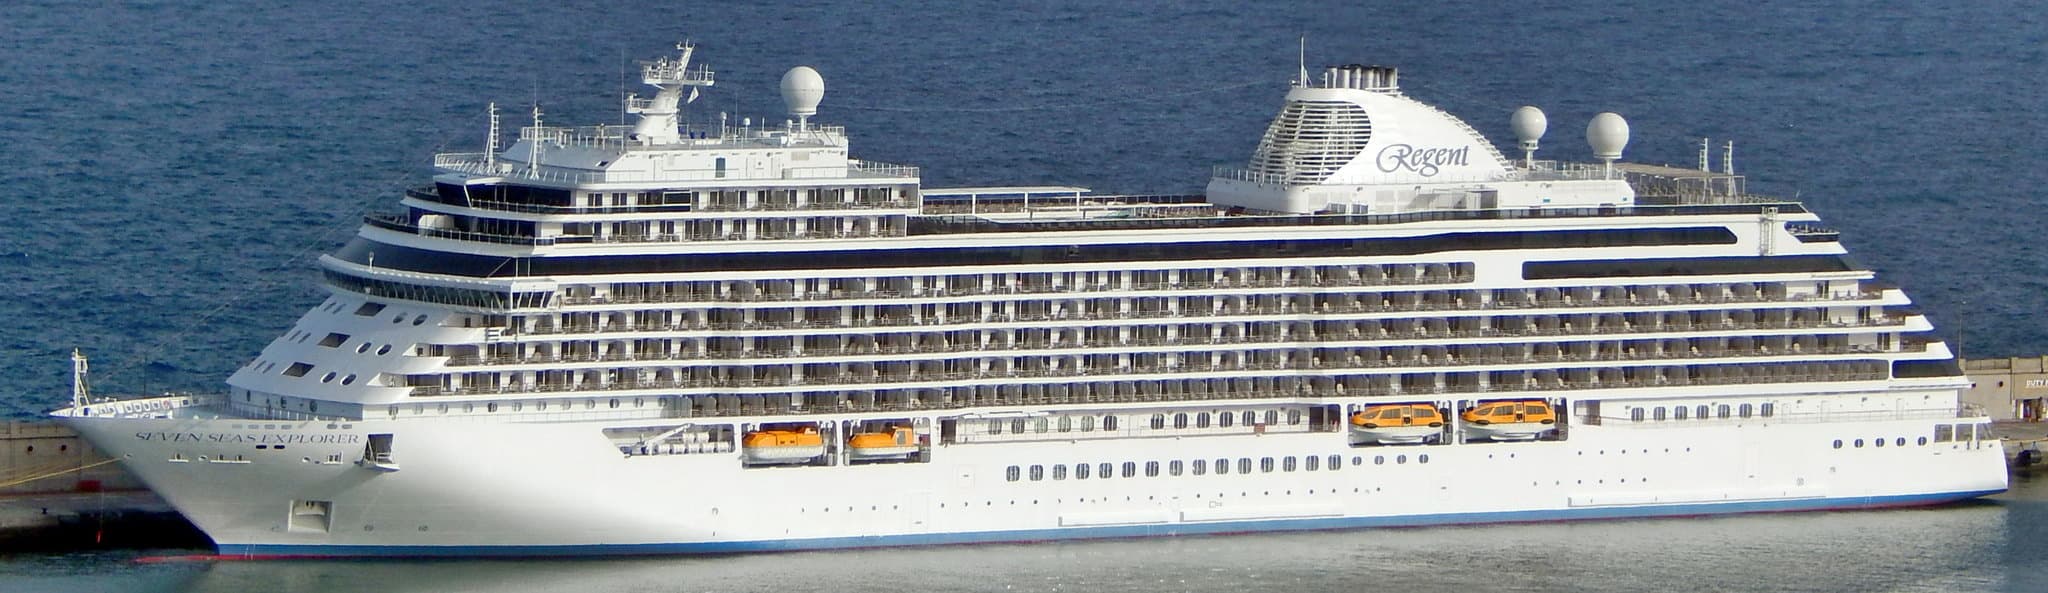 Самый дорогой лайнер класса люкс Seven Seas Explorer крещён в Монте-Карло